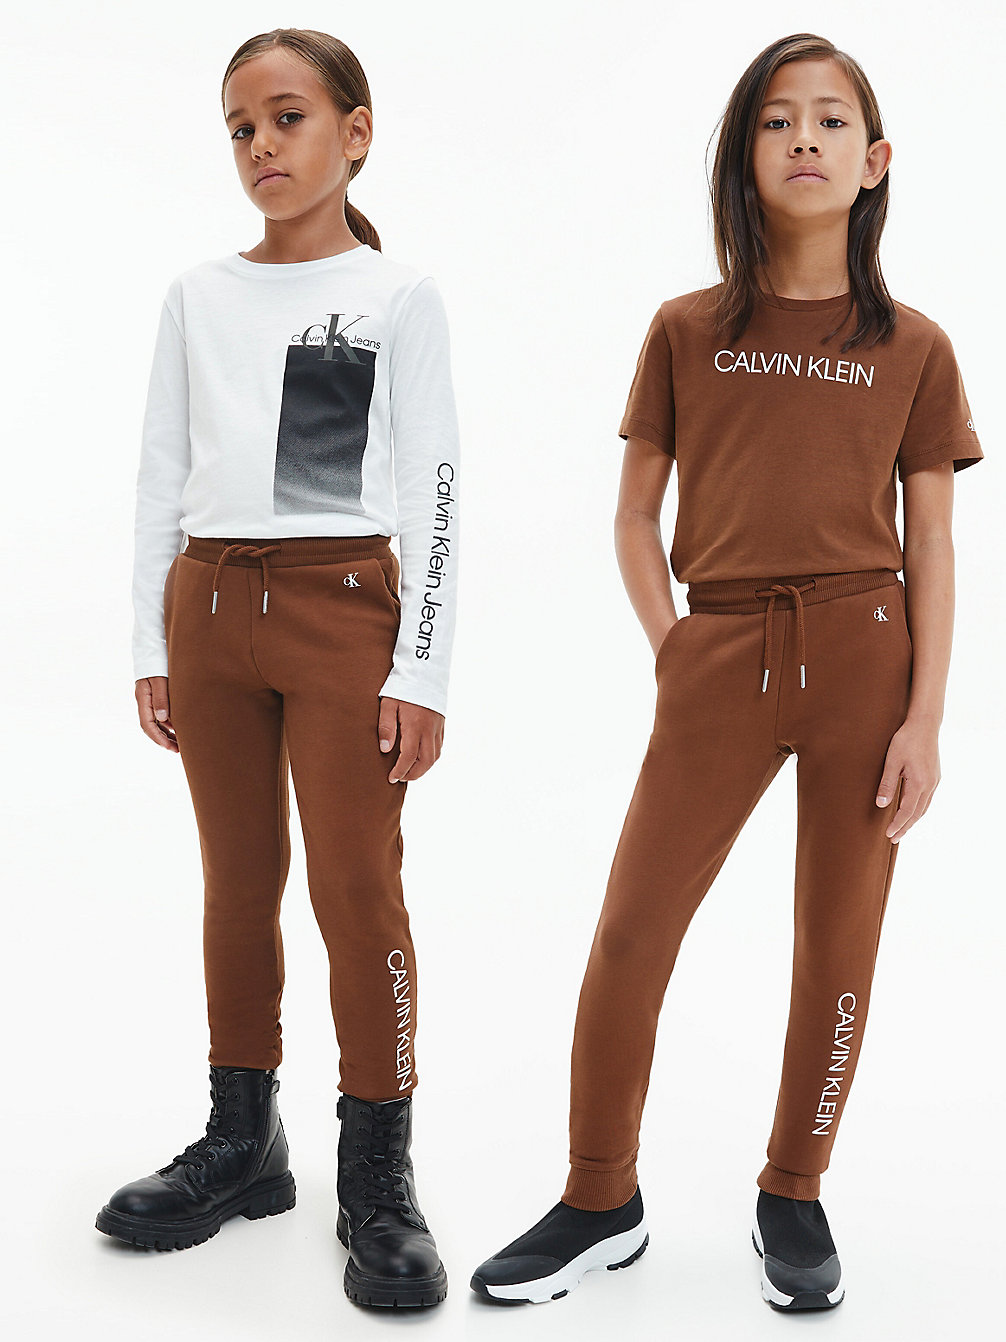 MILK CHOCOLATE Unisex Slim Joggers undefined kids unisex Calvin Klein